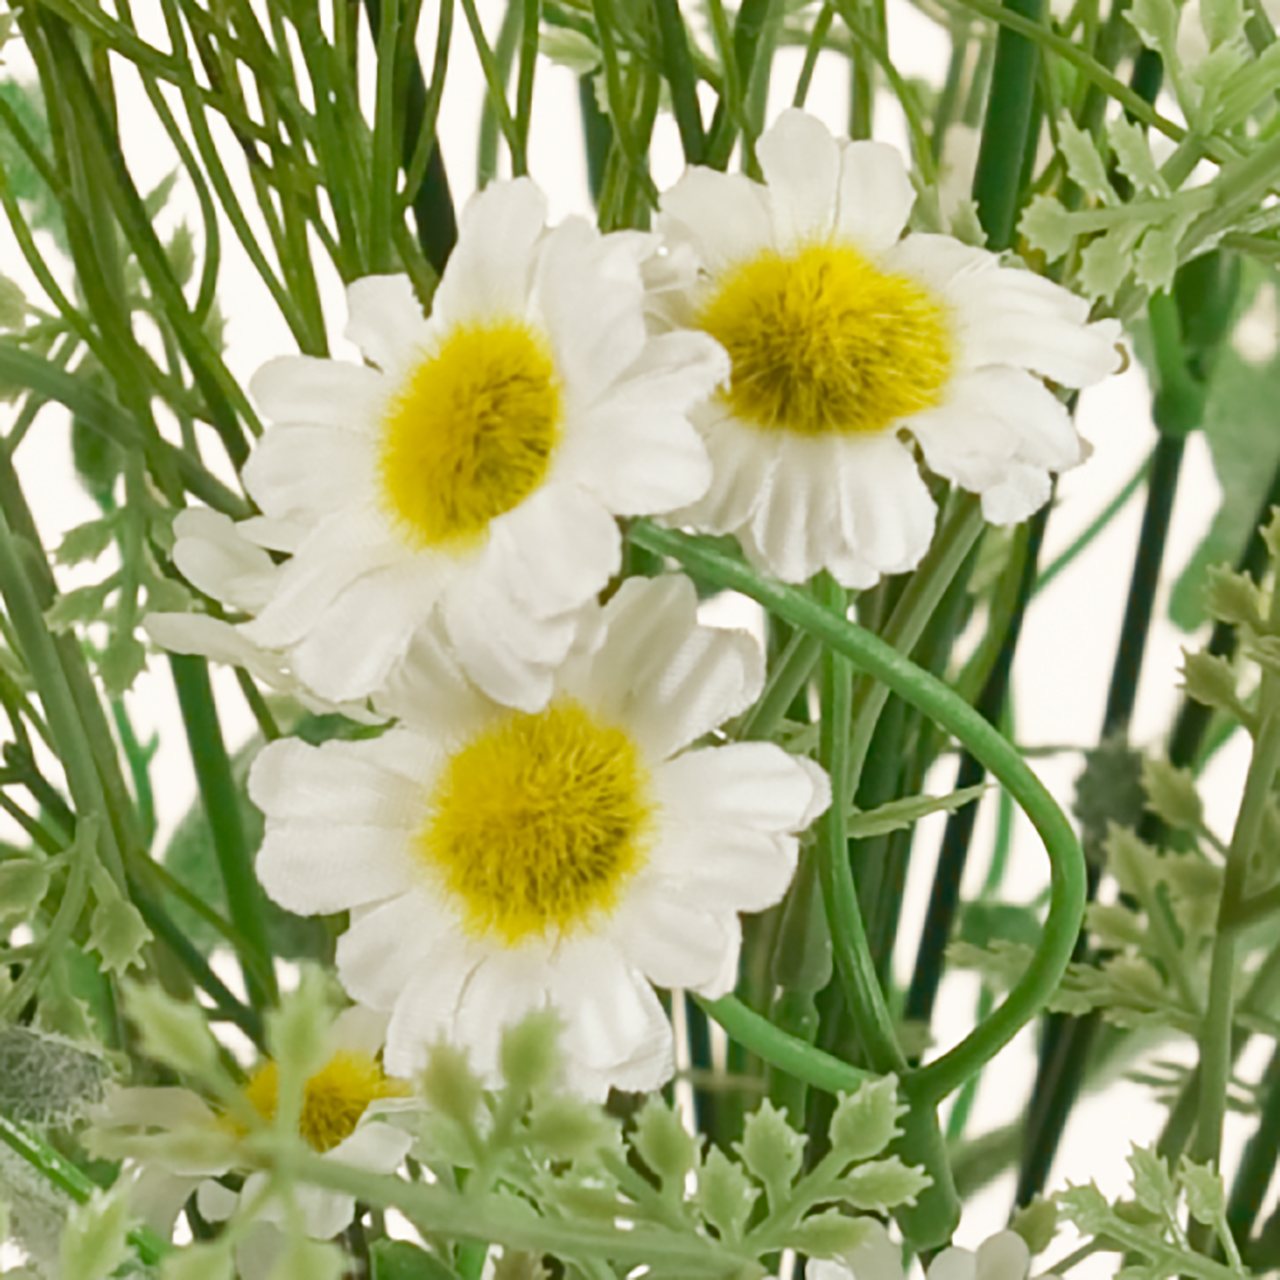 マイフラ 通販 Magiq プロヴァンスカモミールブーケ ホワイト アーティフィシャルフラワー 造花 Fm 花径 約2 2 5 長さ 約48 幅 約25cm ホワイト Magiq アーティフィシャルフラワー 造花 全国にmagiq 花器 花資材などをお届けします